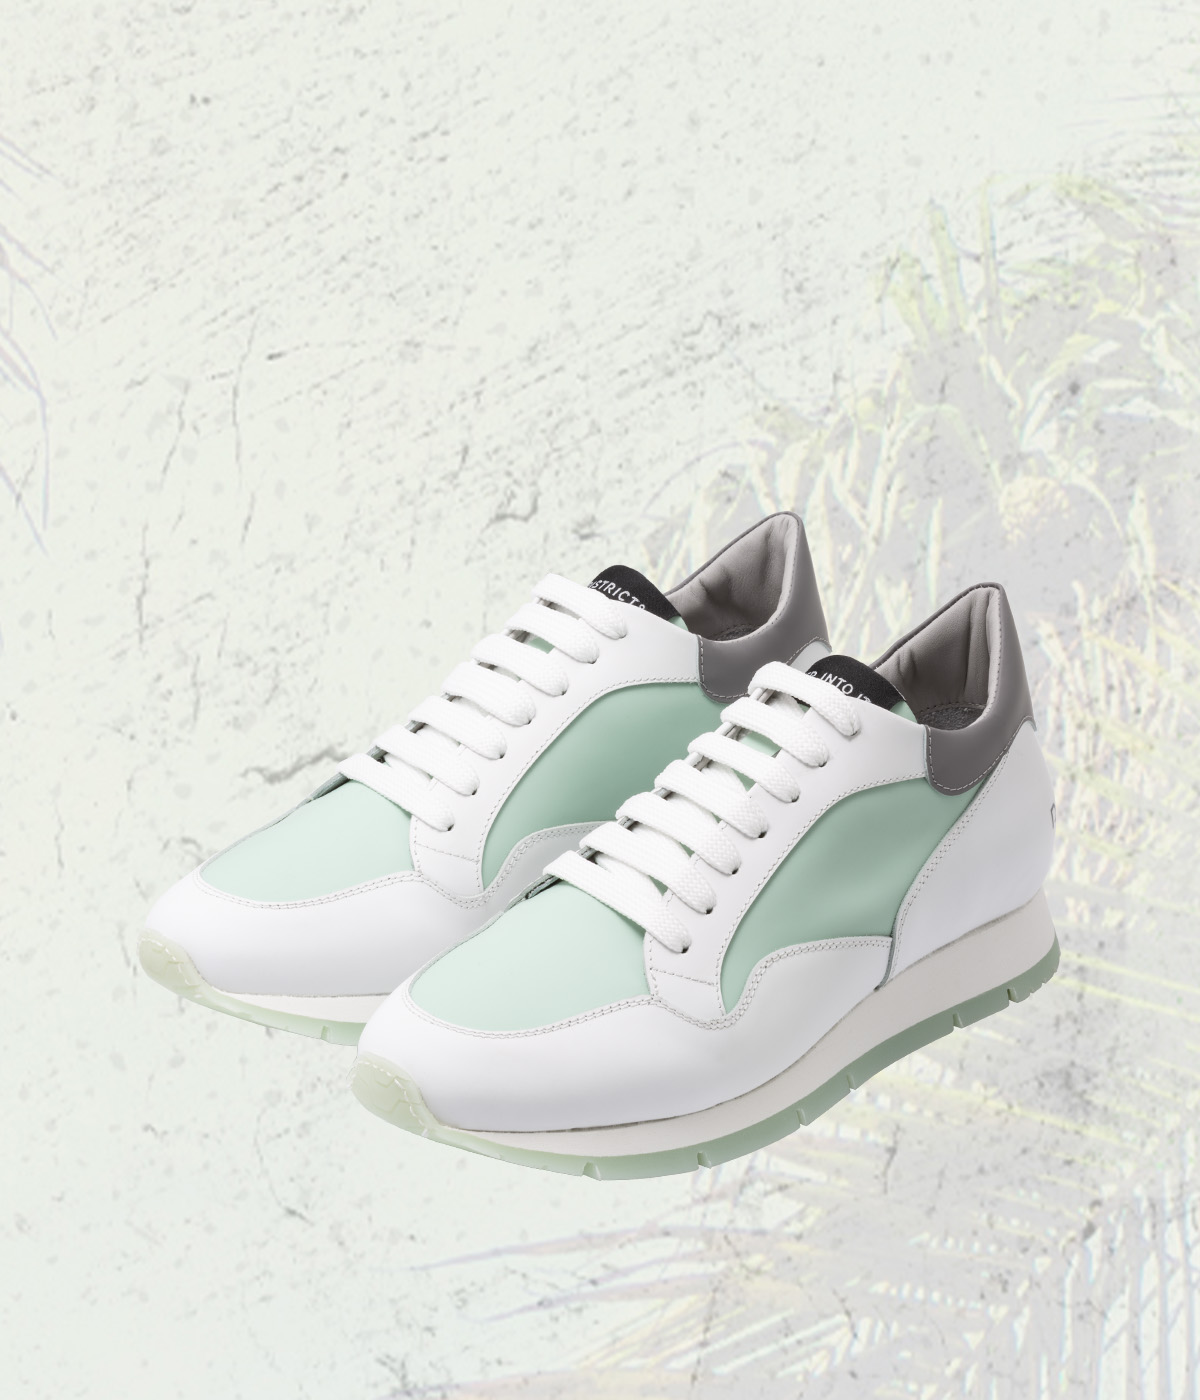 DISTRICT8 - Sneakers Diamond Lane (812) in pelle gommata bianca/verde acqua, spoiler grigio e logo serigrafato